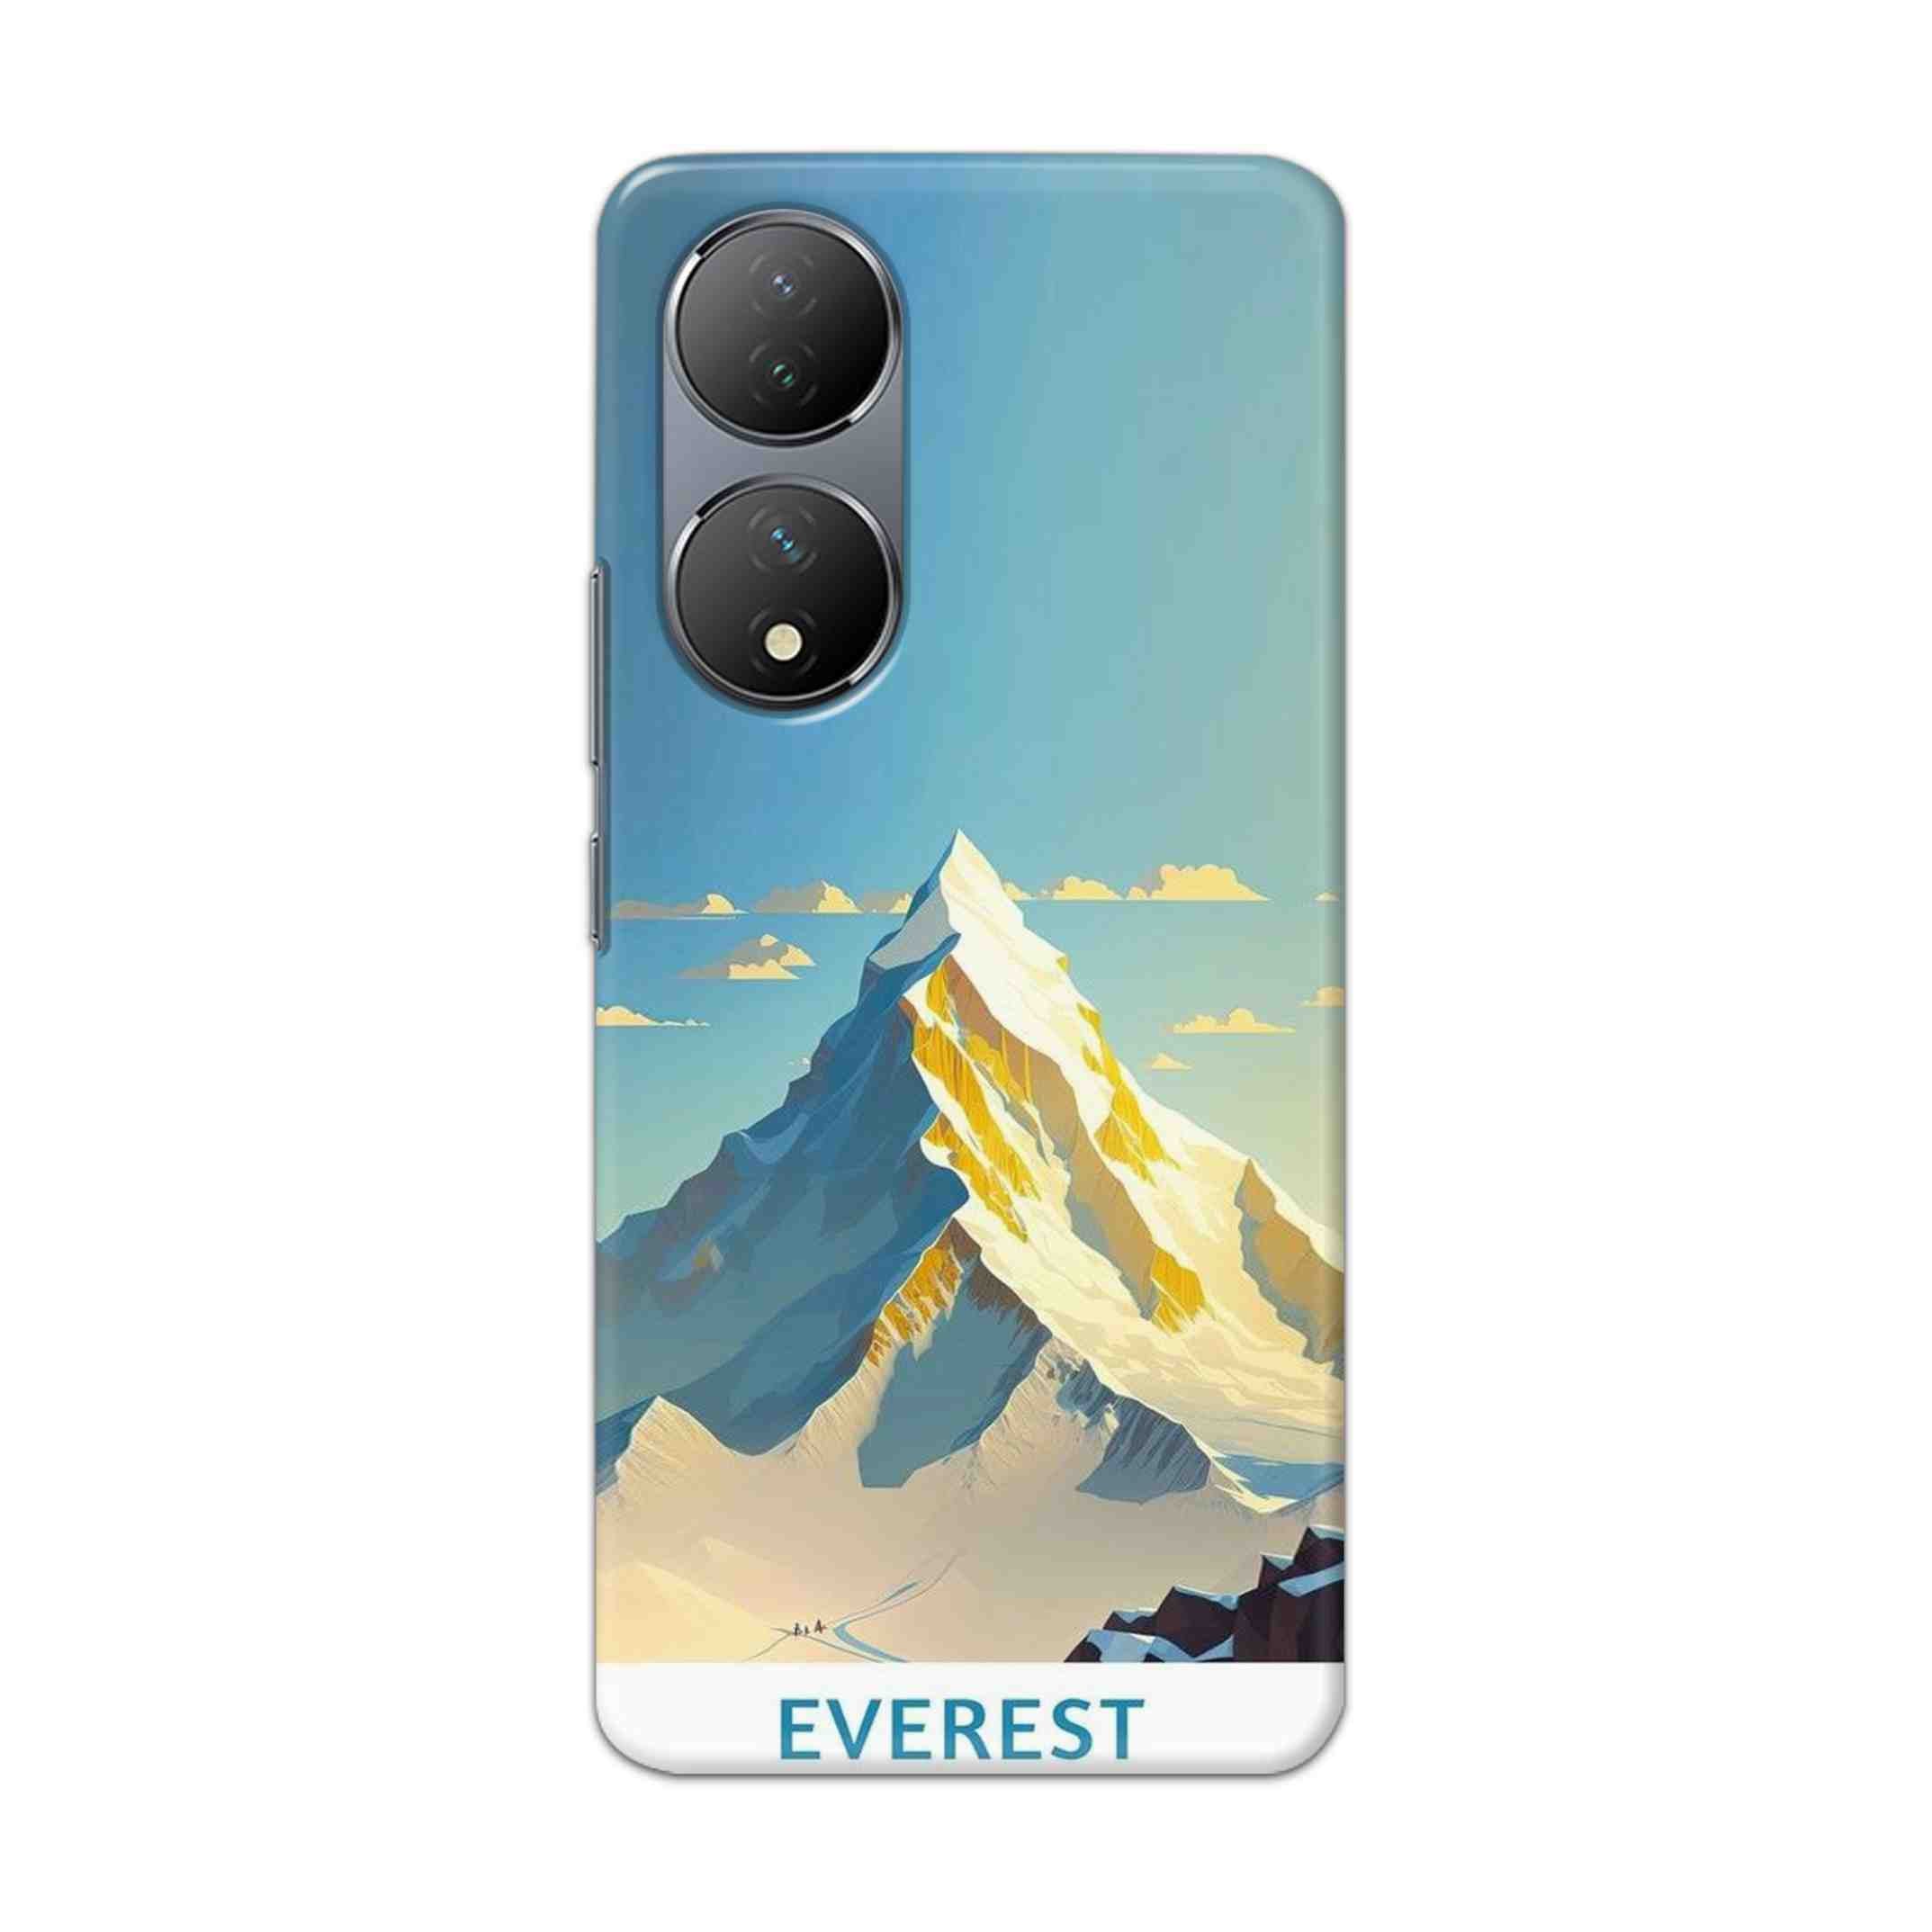 Buy Everest Hard Back Mobile Phone Case Cover For Vivo Y100 Online